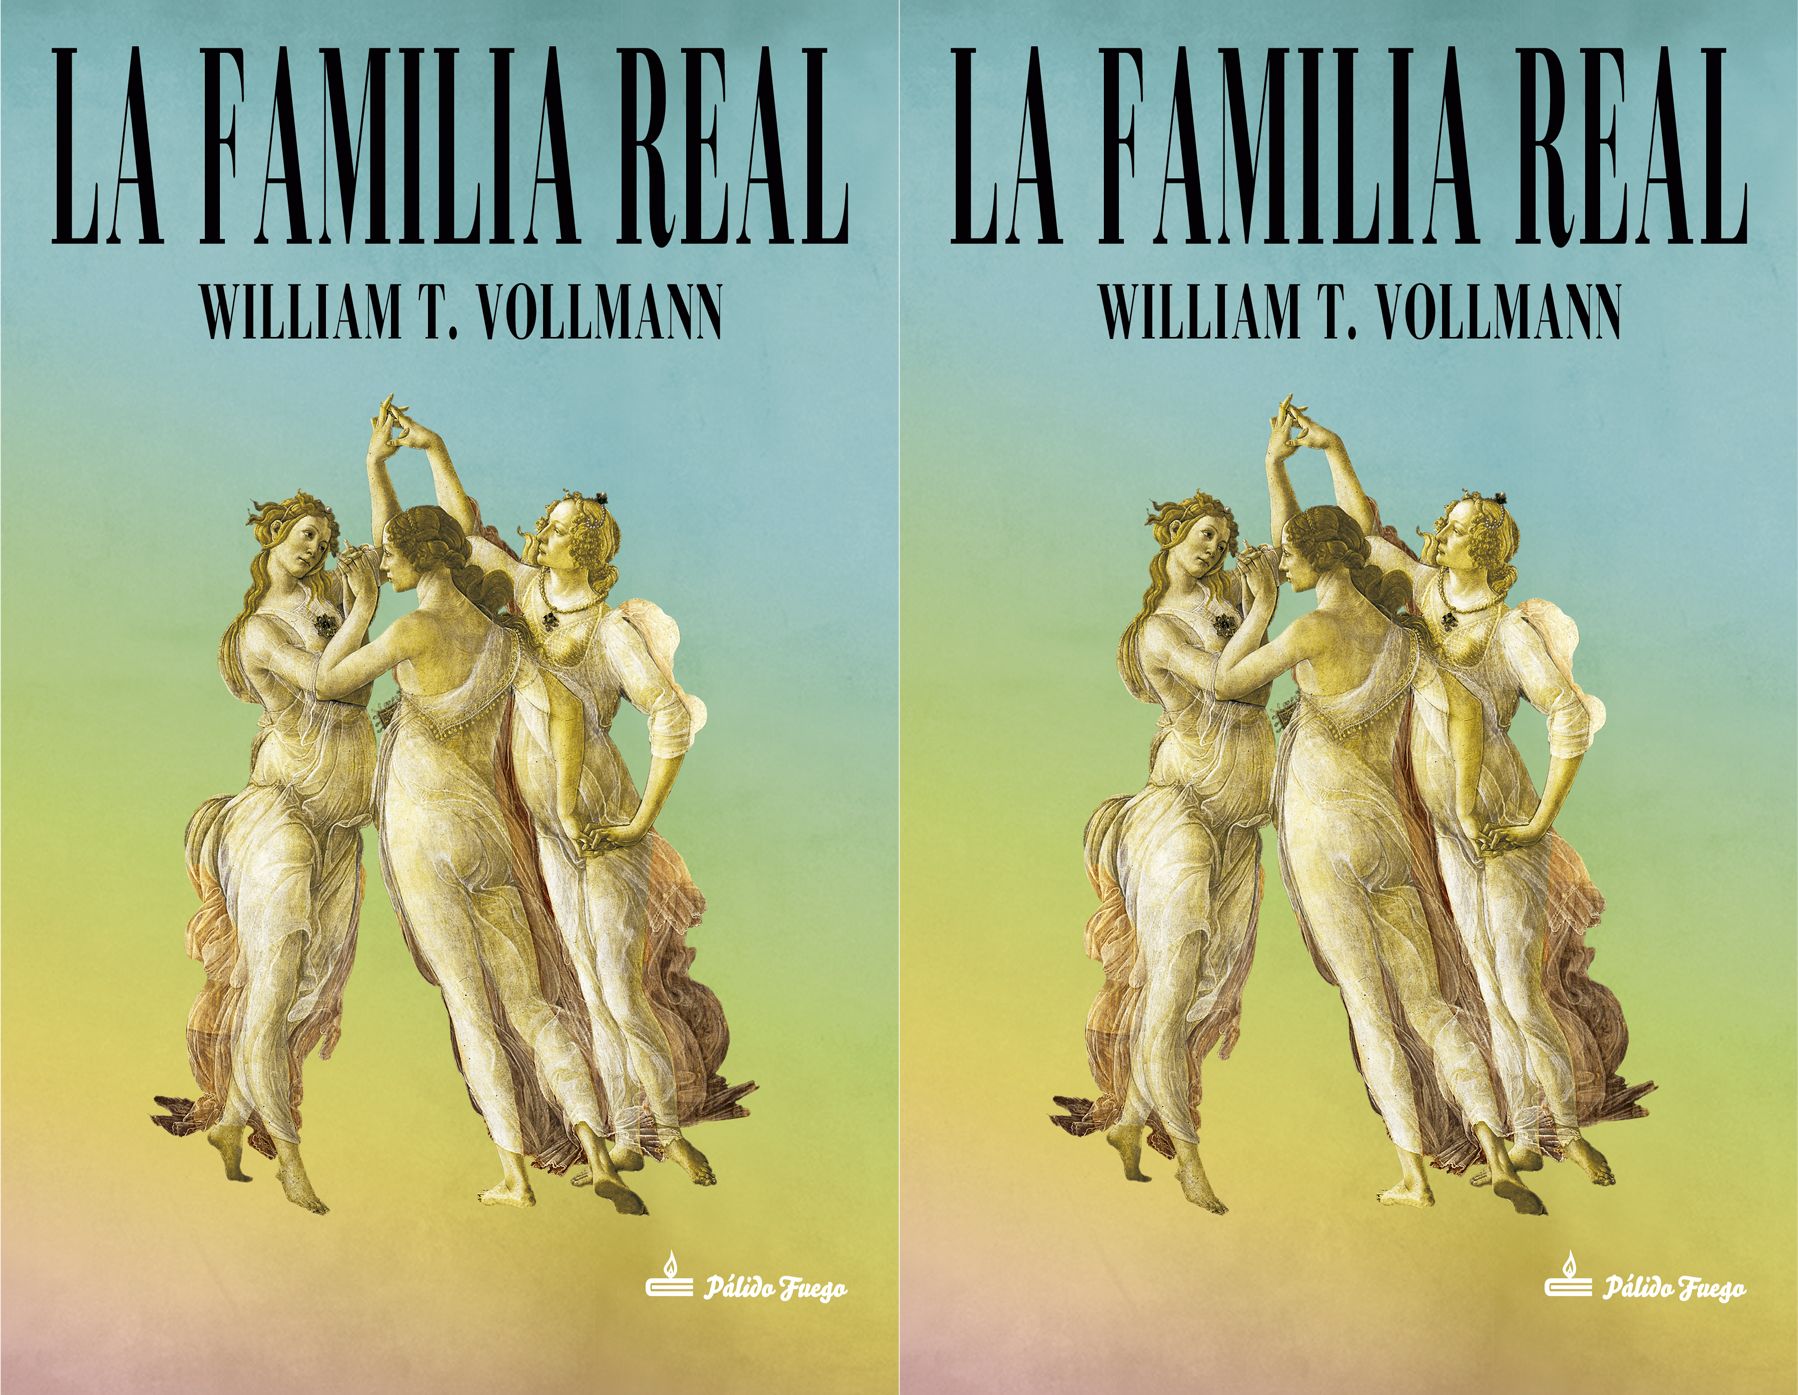 William T. Vollmann: amor, violencia y prostitutas